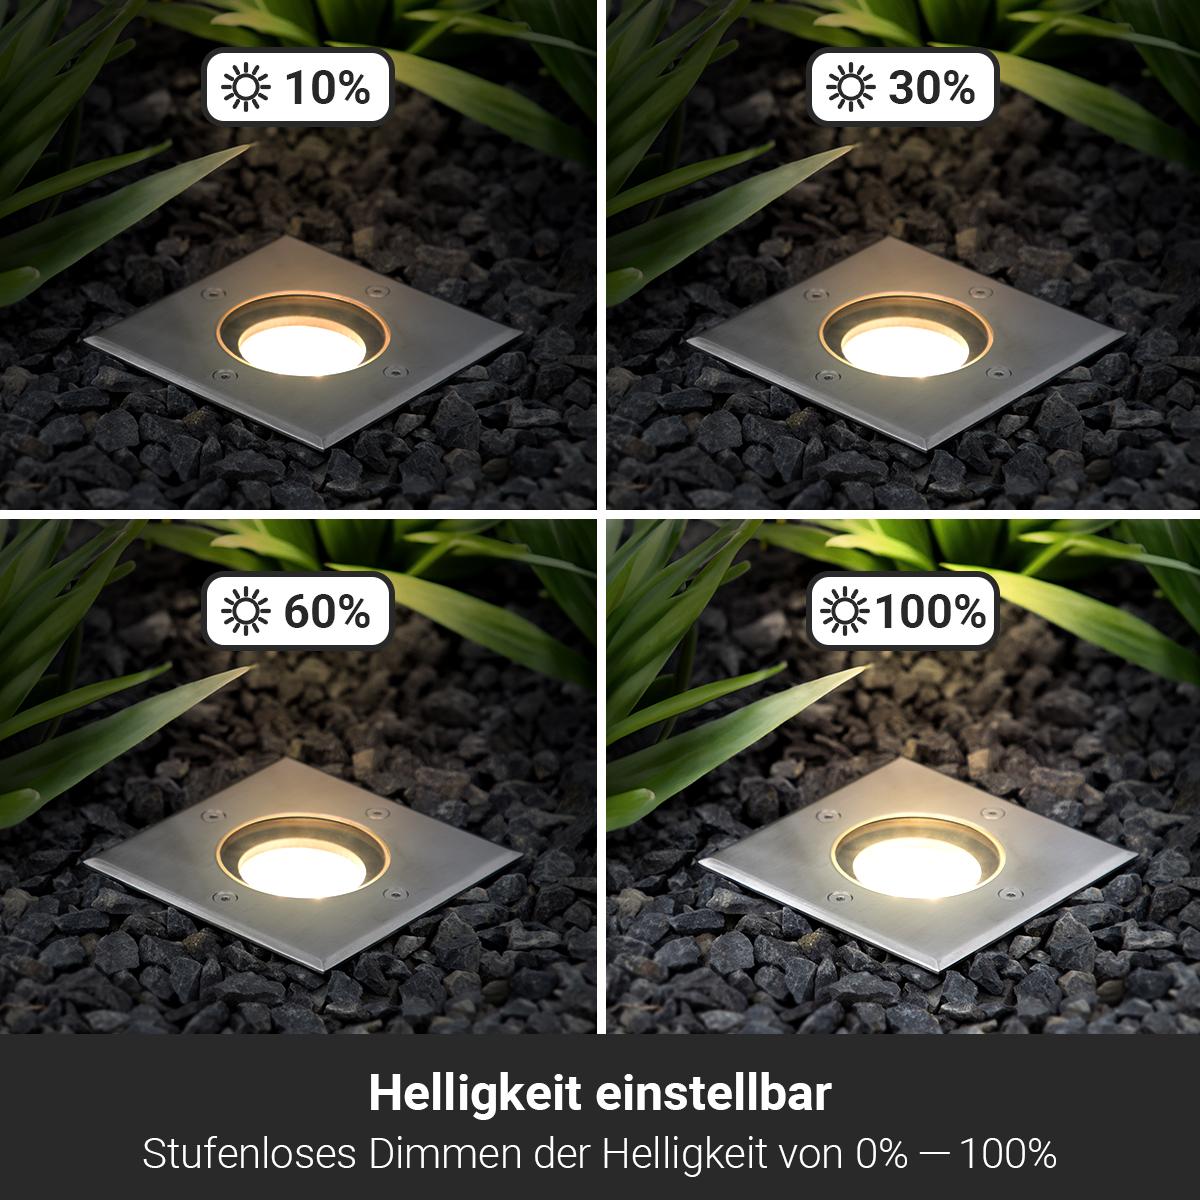 LED Bodeneinbaustrahler flach eckig Edelstahl 230V IP67 - Leuchtmittel: 5W 2700K DIMMBAR 60° - Anzahl: 3x